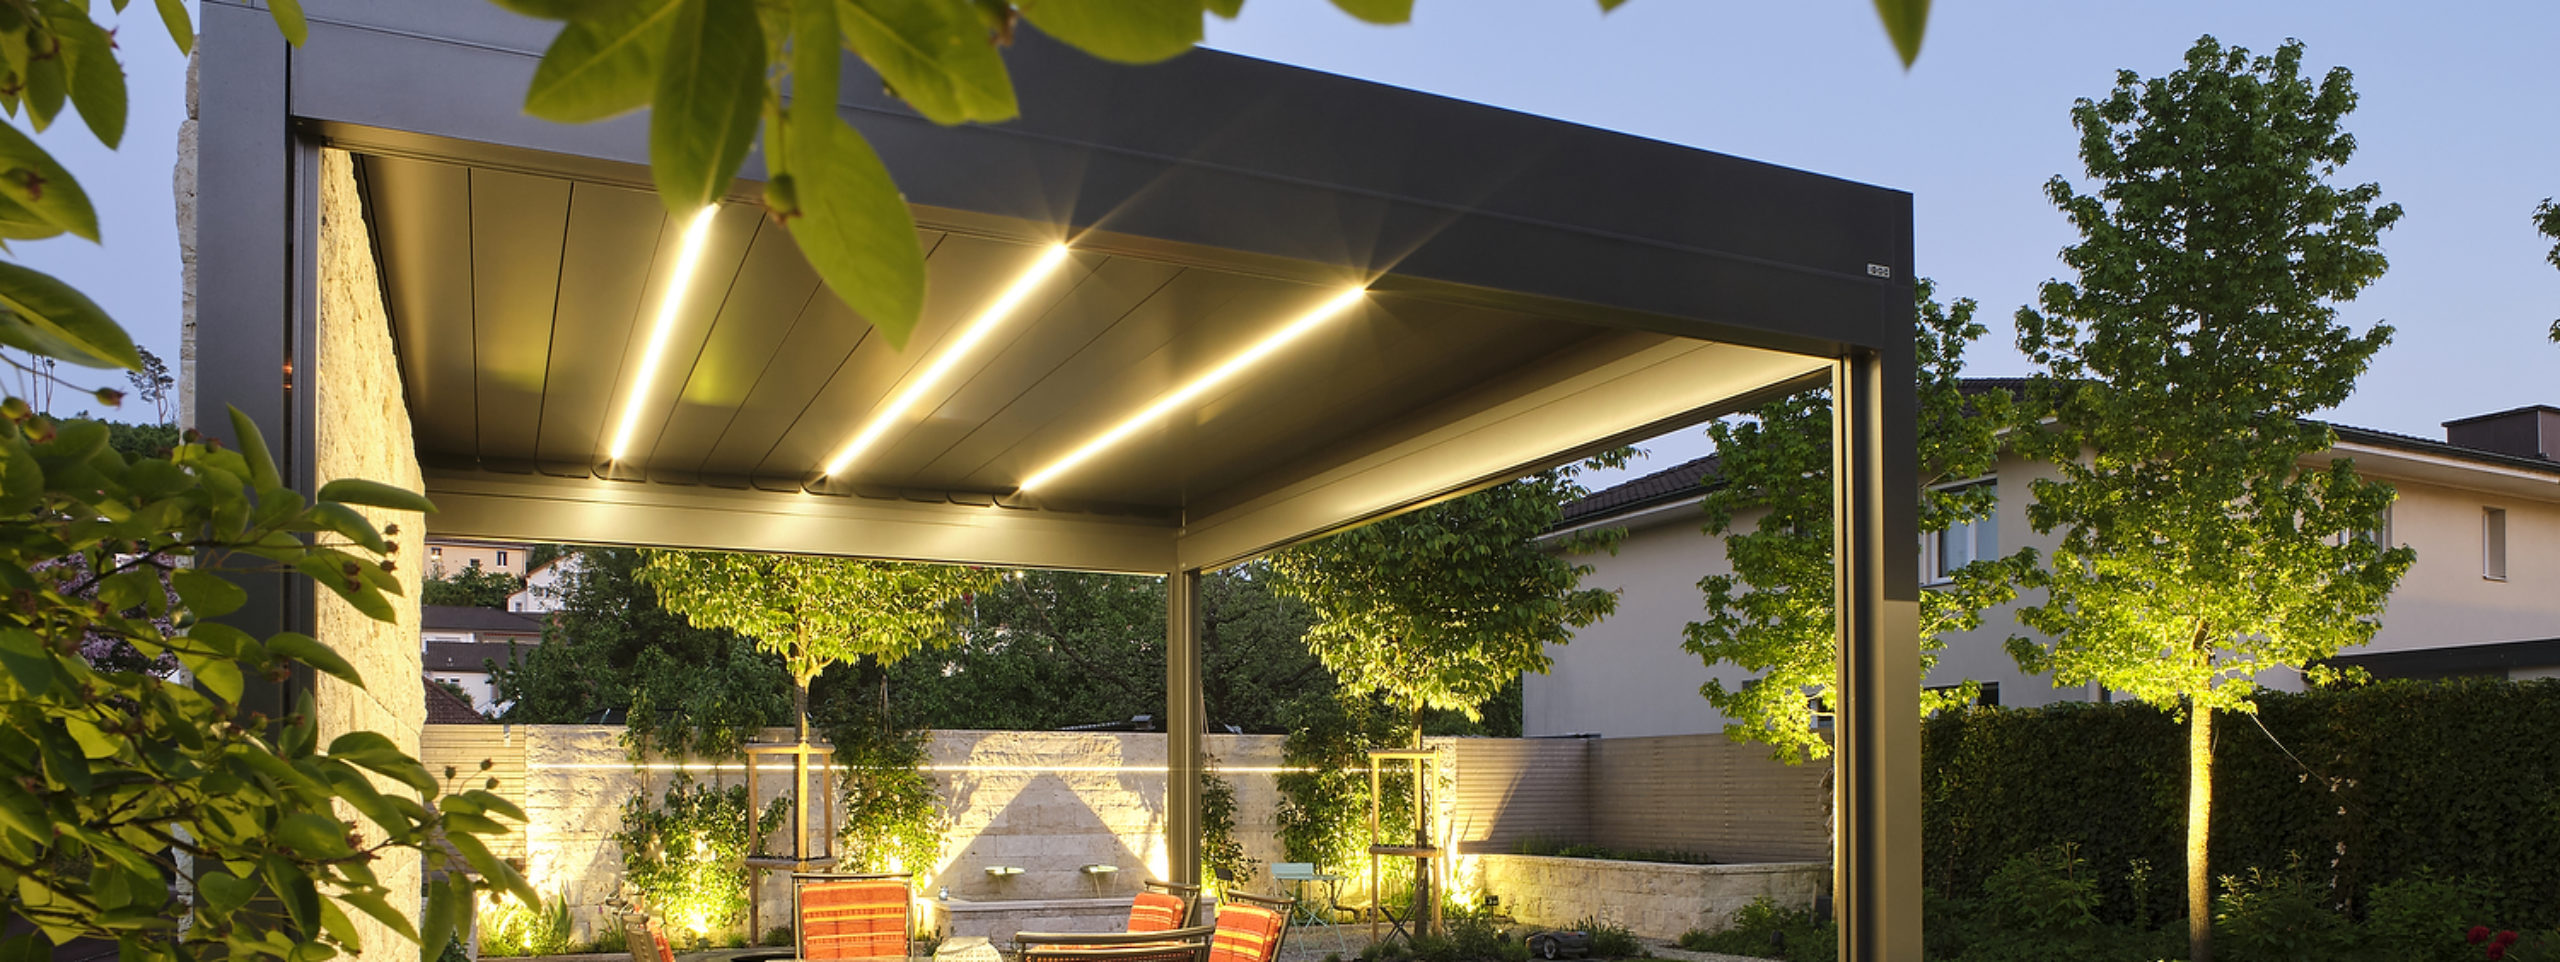 Das Lamellendach ist ein perfekter Schutz gegen Sonne und Regen. Die natürliche Luftzirkulation durch die Lamellen funktioniert wie eine umweltfreundliche Klimaanlage. Bei Sonnenschein stellt man die Lamellen einfach so schräg, damit man den nötigen Schatten und die gewünschte Luftzirkulation erhält. Bei Schlechtwetter schliesst man die Lamellen, um vor Regen geschützt zu sein. Auf dem Bild ist das Lamellendach Bavona von Sunparadies mit integrierten LED-Strips in der sommerlichen Abenddämmerung zu sehen.